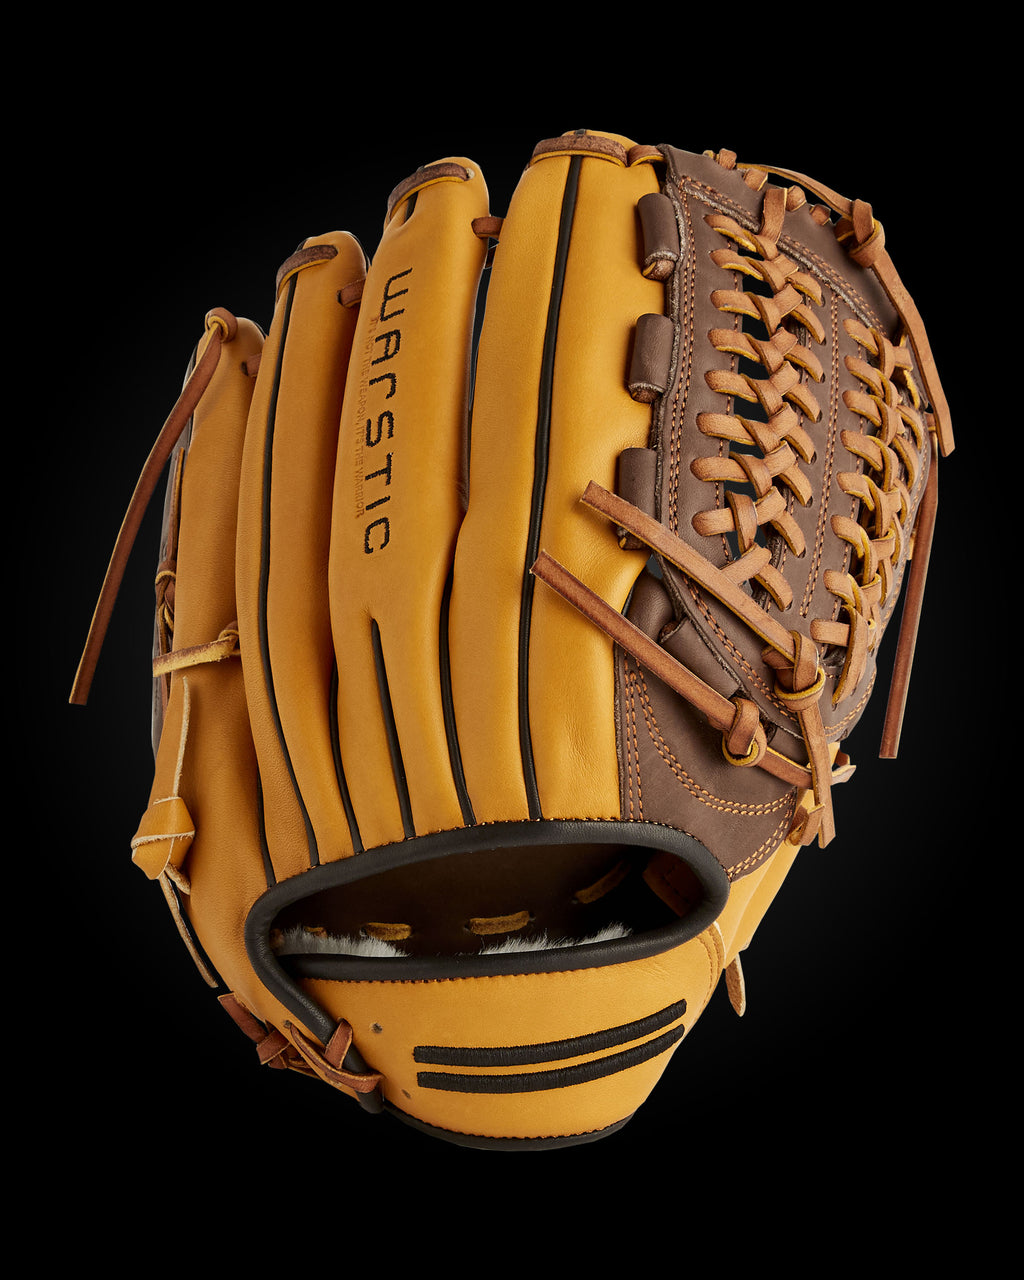 Baseball Equipment & Gear  Baseball Supplies Store